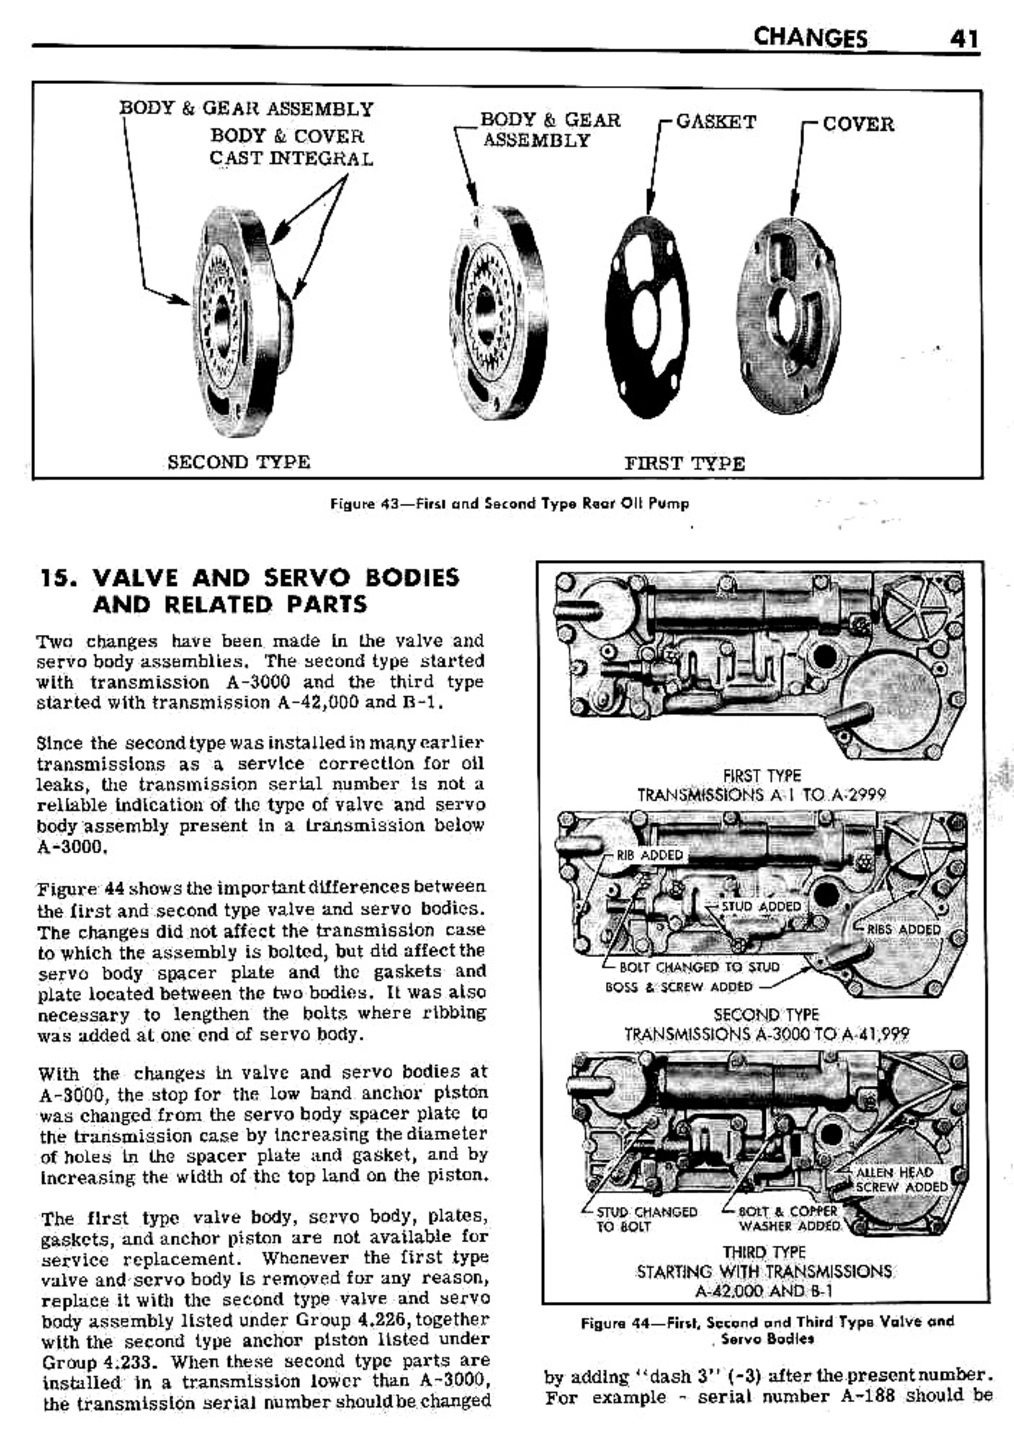 n_04 1948 Buick Transmission - Design Changes-003-003.jpg